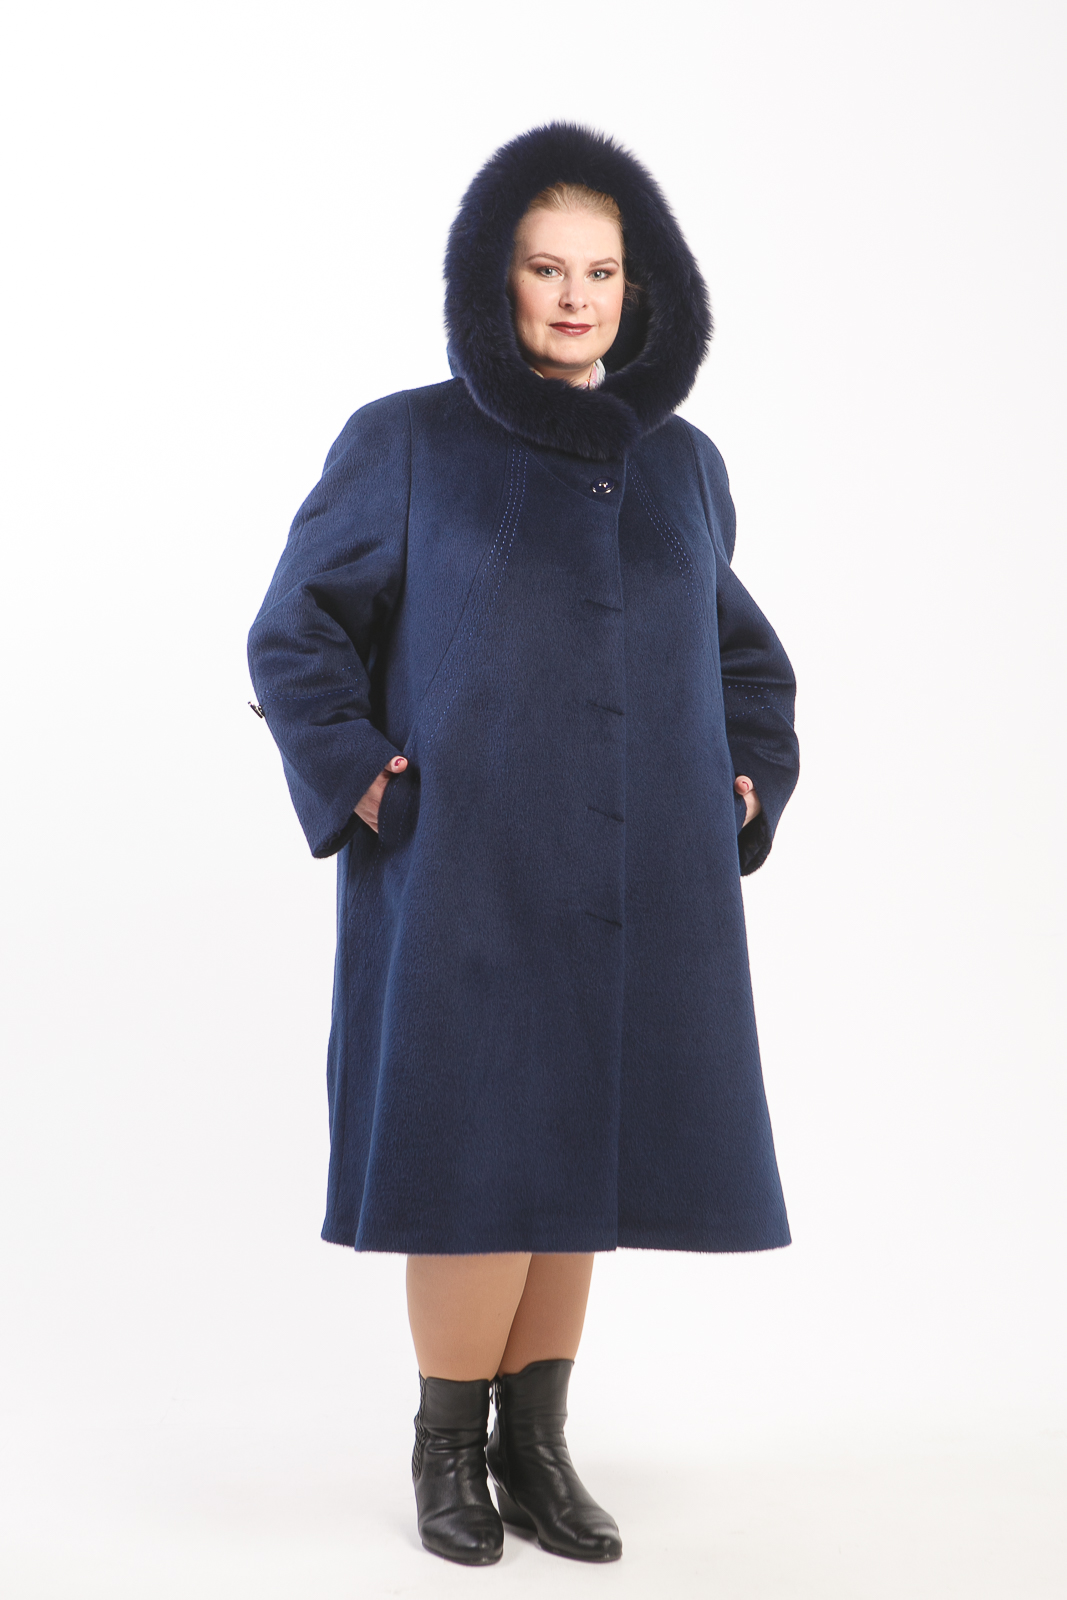 Женский зимнее пальто большого размера купить. Пальто Тревери модель 64325. Зимнее пальто из драпа женское больших размеров. Пальто зимнее женское больших размеров. Драповое пальто женское зимнее большого размера.